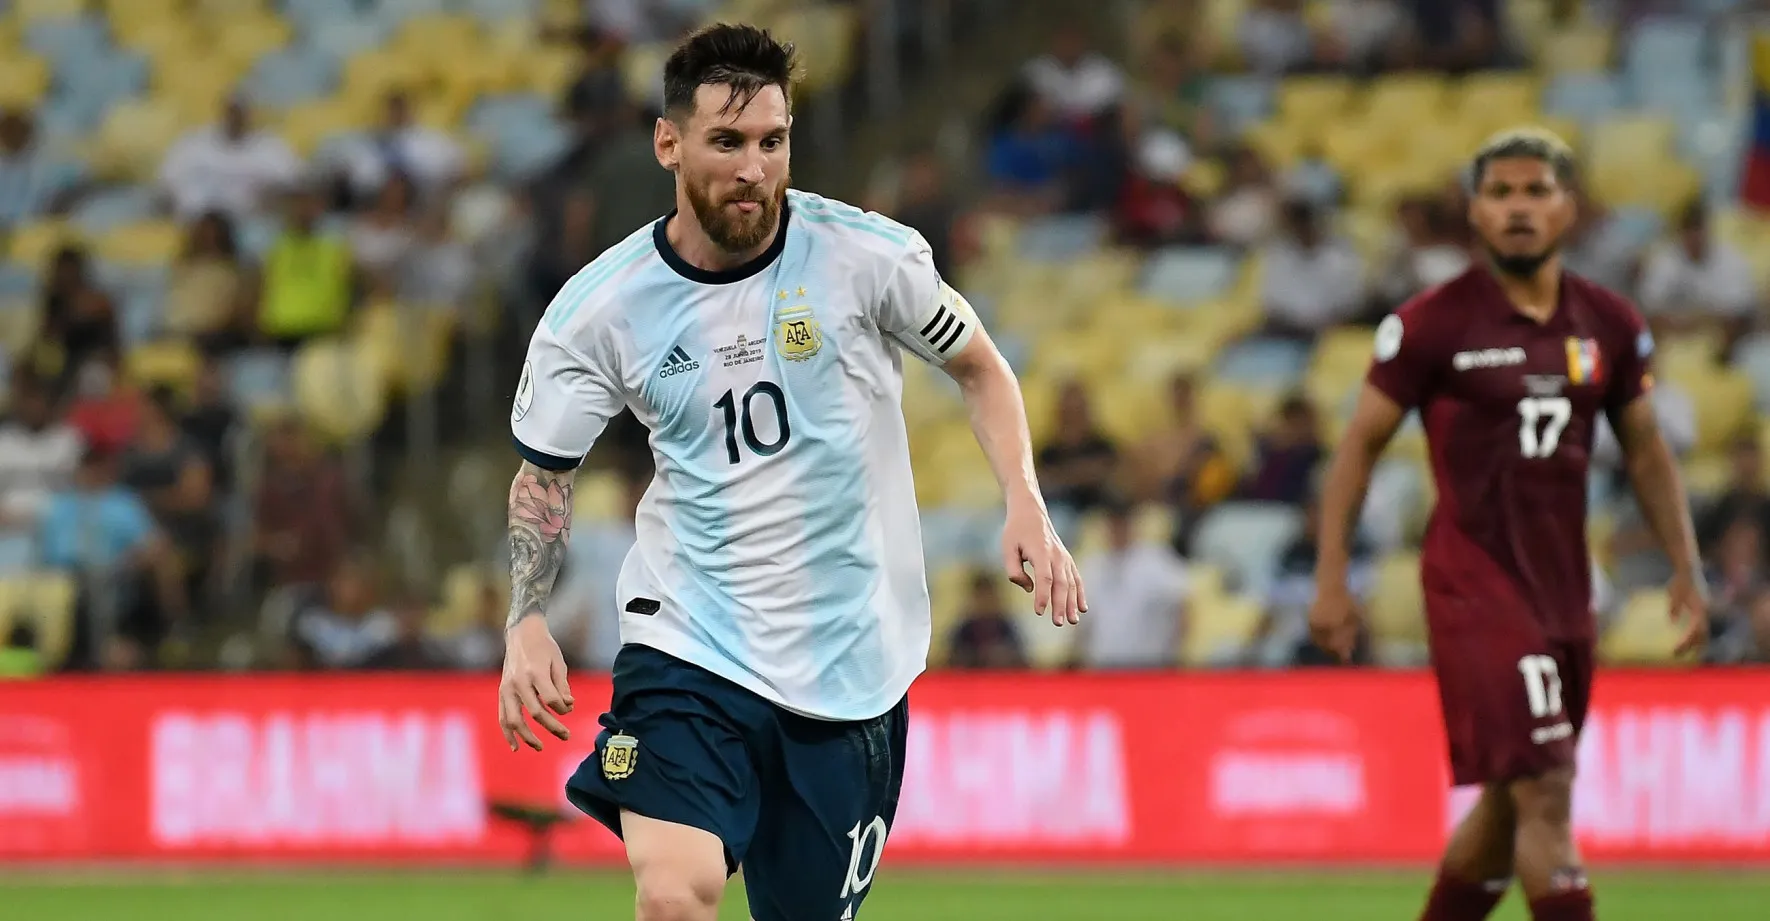 OBRAZEM: „O Messim budeme povídat našim dětem.“ Argentinci slaví fotbalové zlato